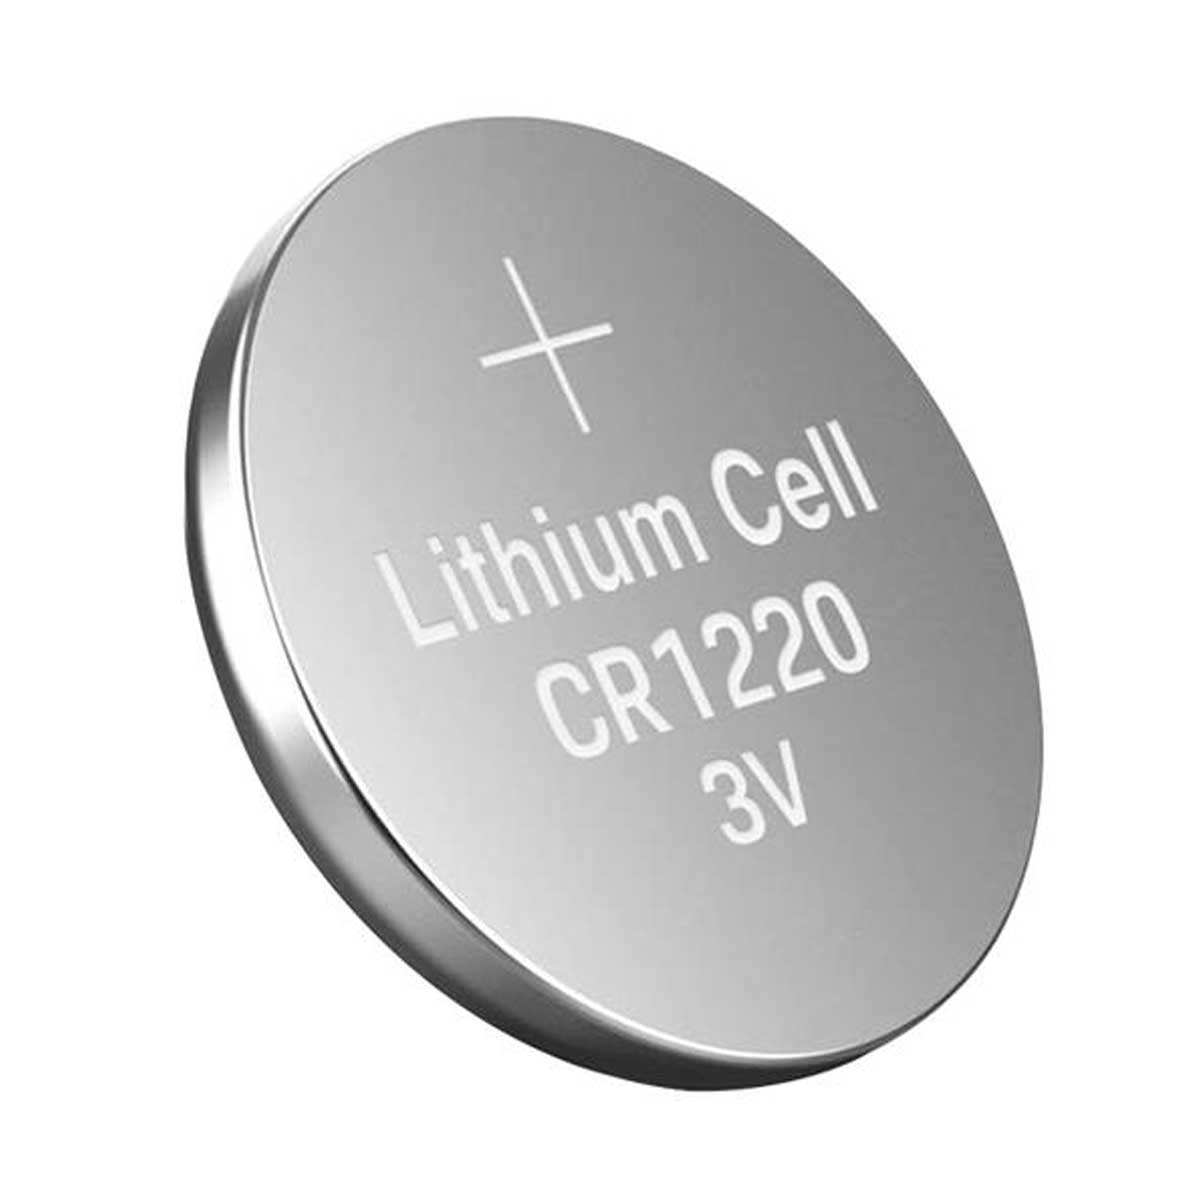 5x Bateria CR1220 3V de Lithium / Pilha CR1220